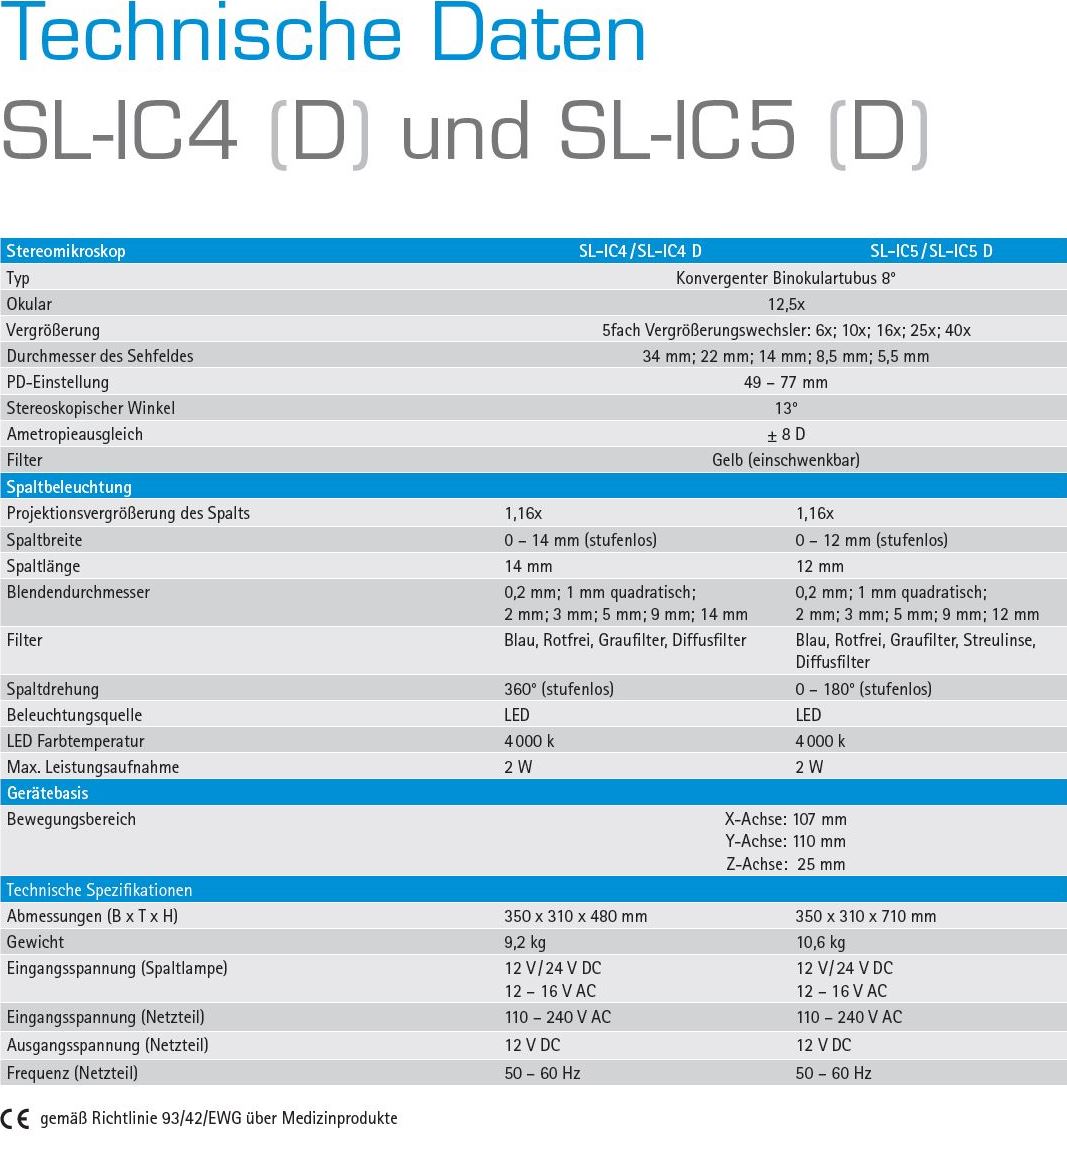 Technische Daten SL-IC4 & SL-IC5.JPG (178 KB)